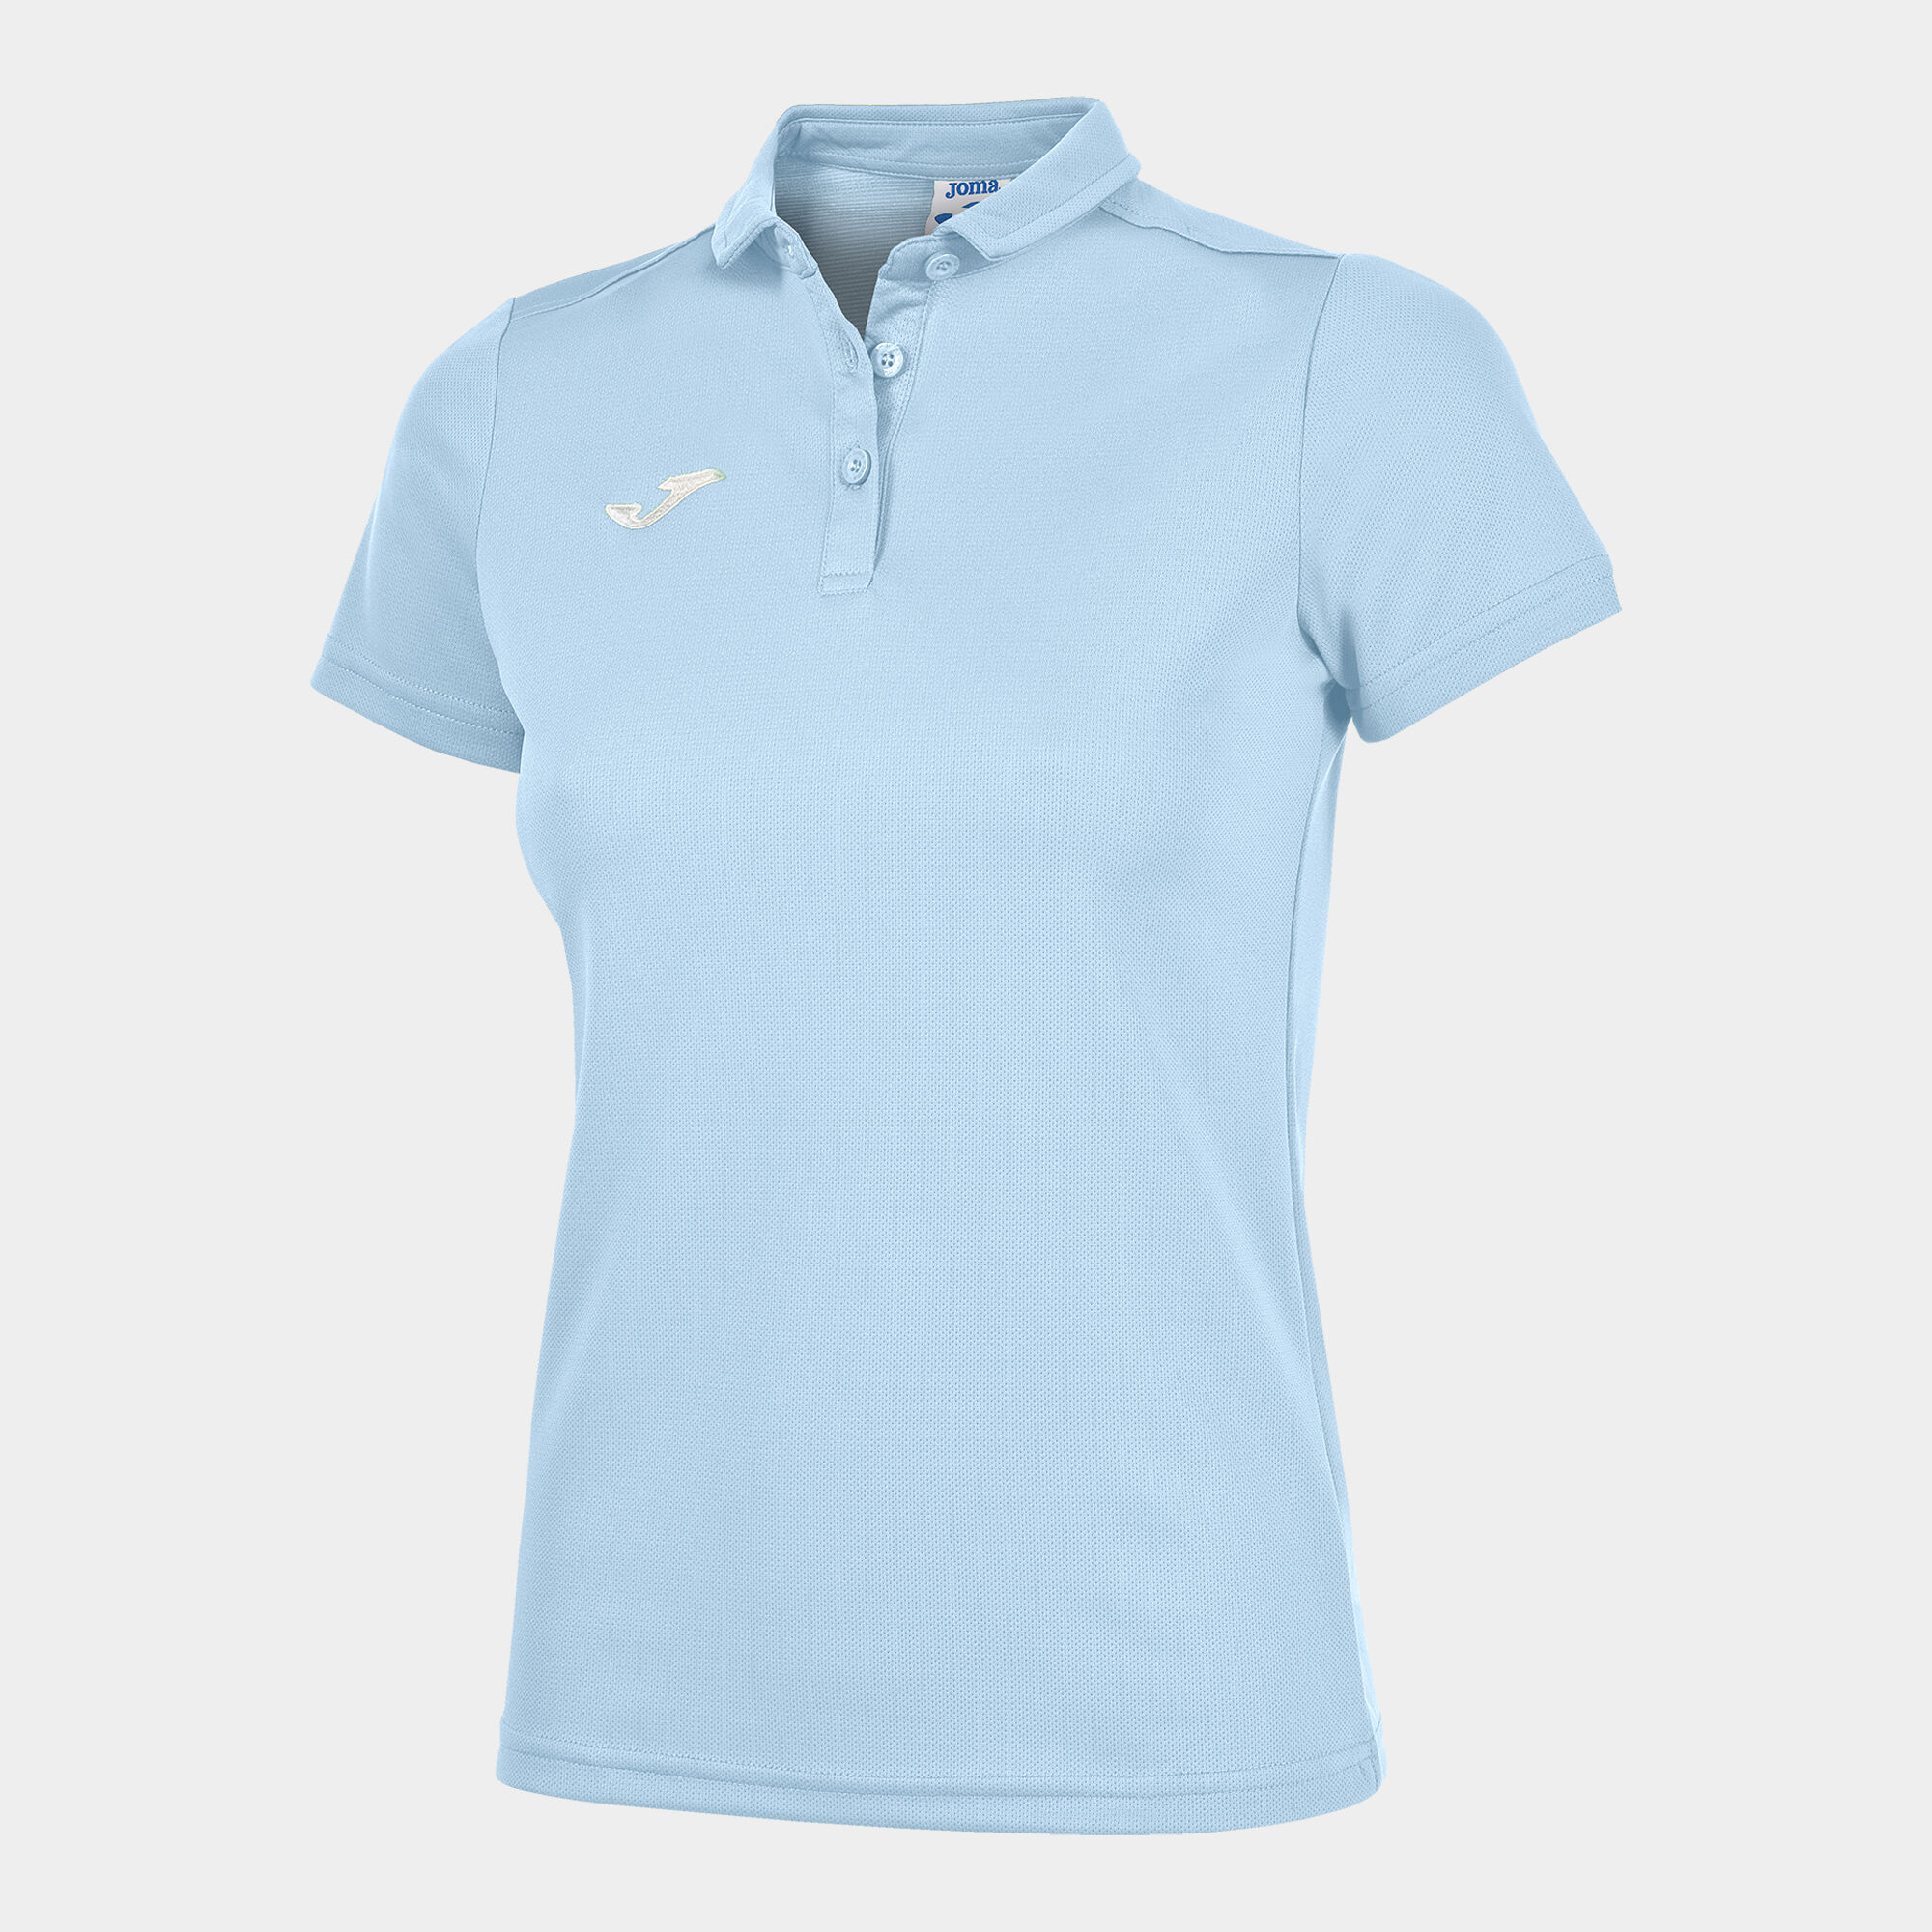 Polo shirt short-sleeve woman Hobby sky blue